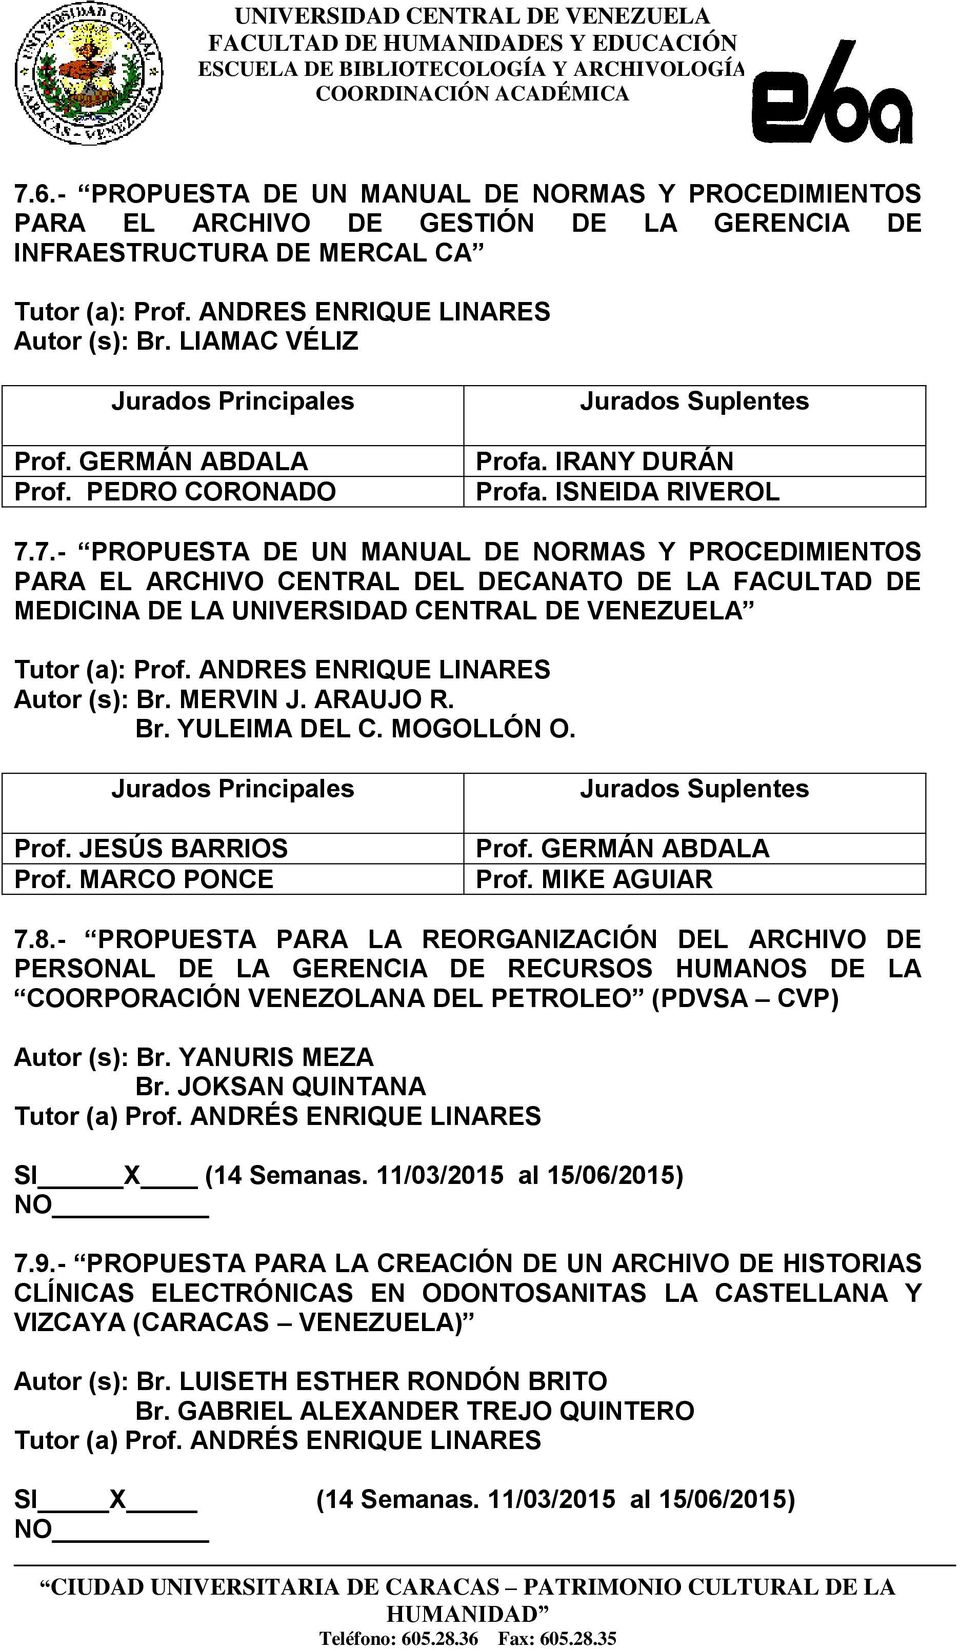 7.- PROPUESTA DE UN MANUAL DE NORMAS Y PROCEDIMIENTOS PARA EL ARCHIVO CENTRAL DEL DECANATO DE LA FACULTAD DE MEDICINA DE LA UNIVERSIDAD CENTRAL DE VENEZUELA Autor (s): Br. MERVIN J. ARAUJO R. Br. YULEIMA DEL C.